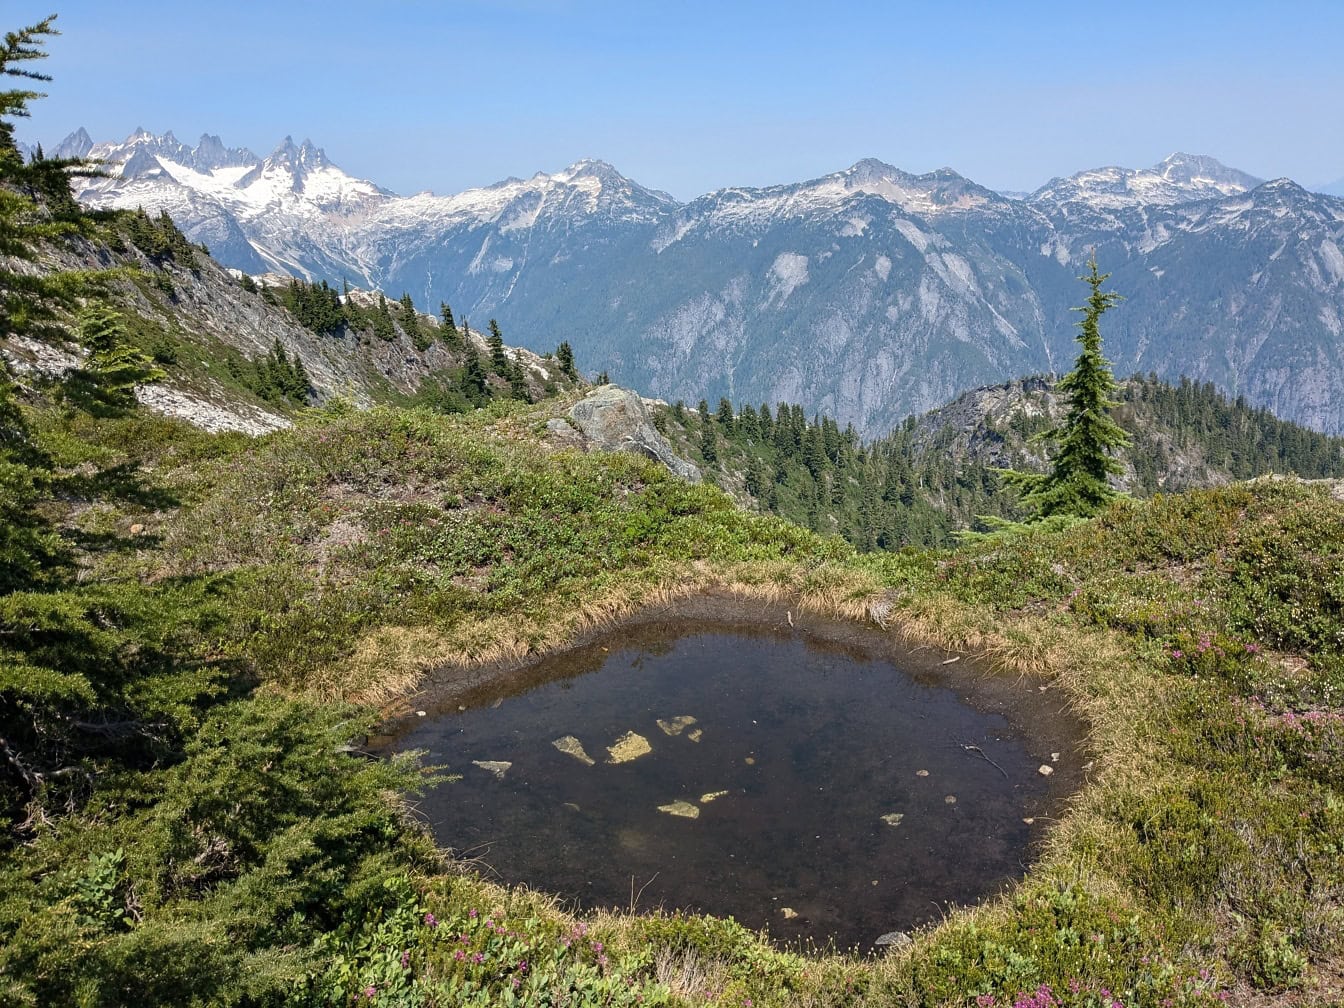 Μικρή λίμνη σε μια χορτώδη περιοχή με βουνά στο βάθος στο Εθνικό Πάρκο North Cascades στην Ουάσινγκτον